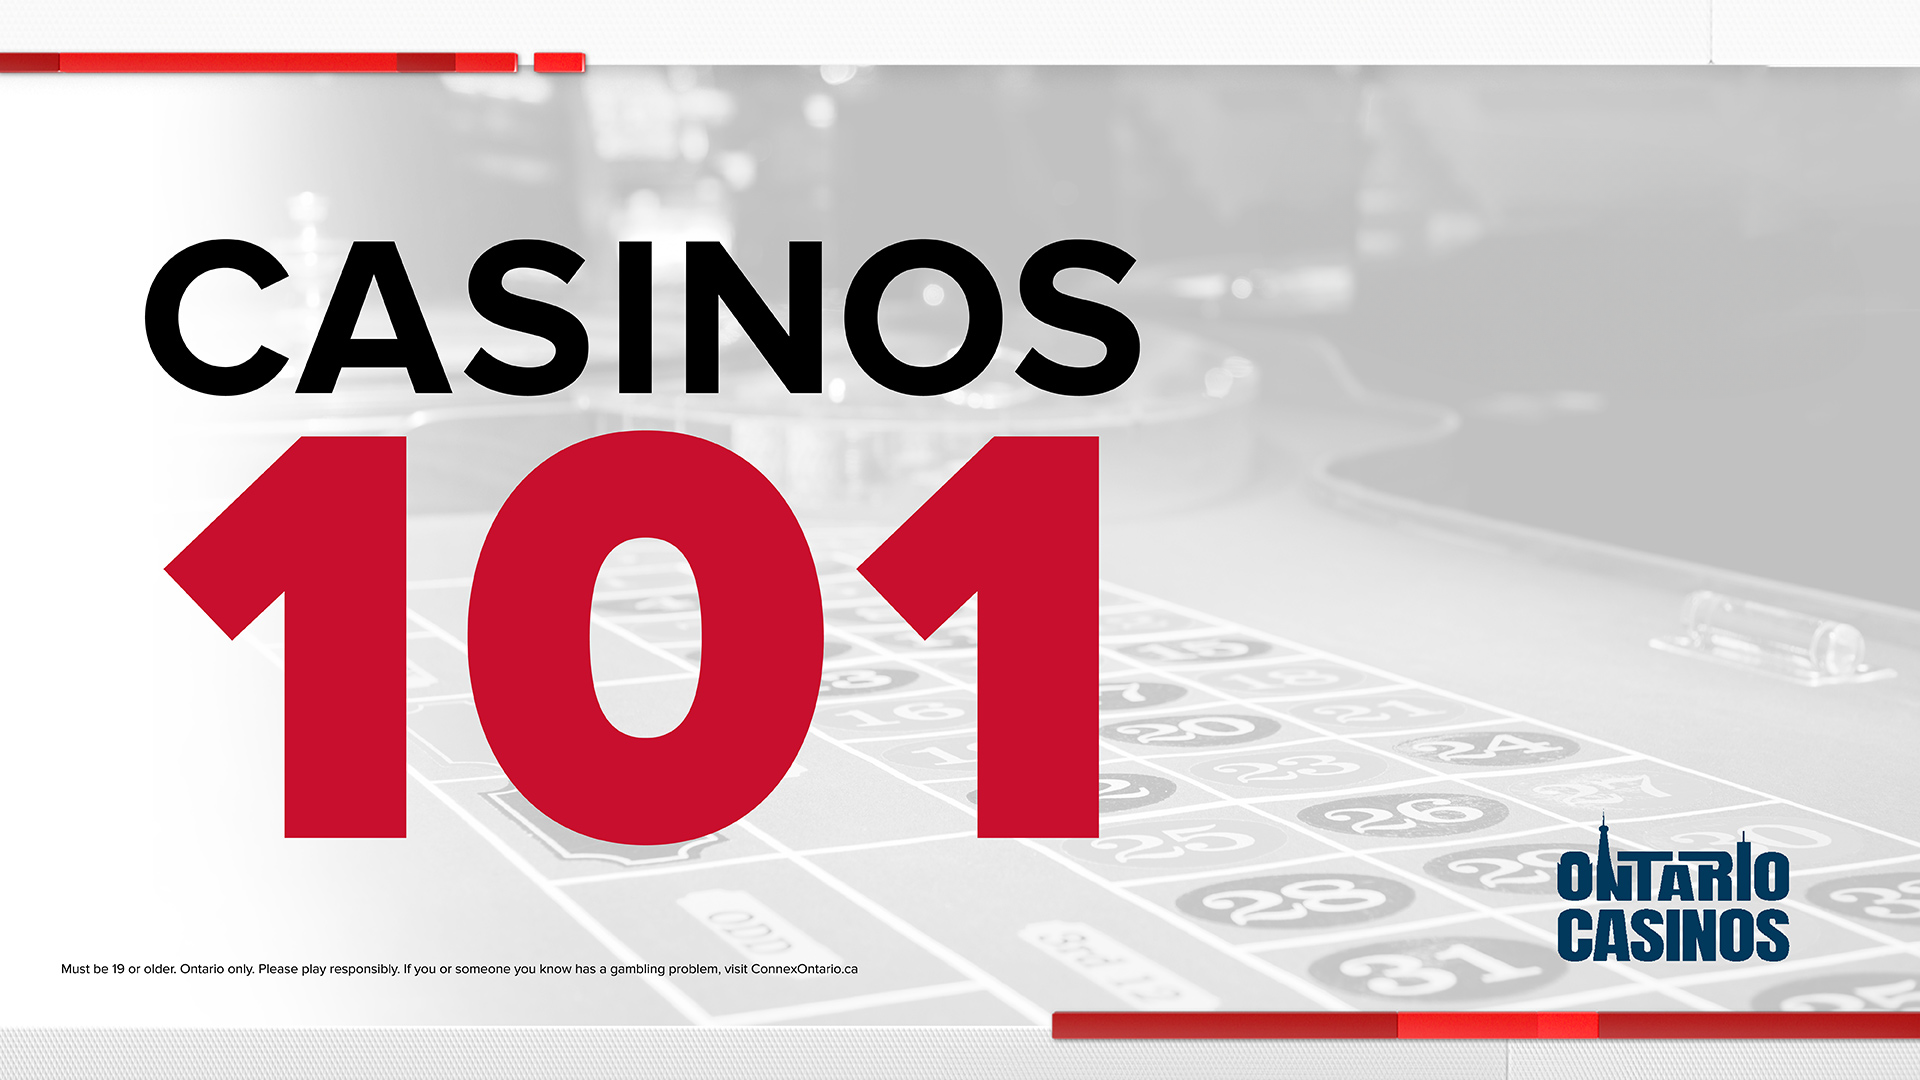 Casinos 101